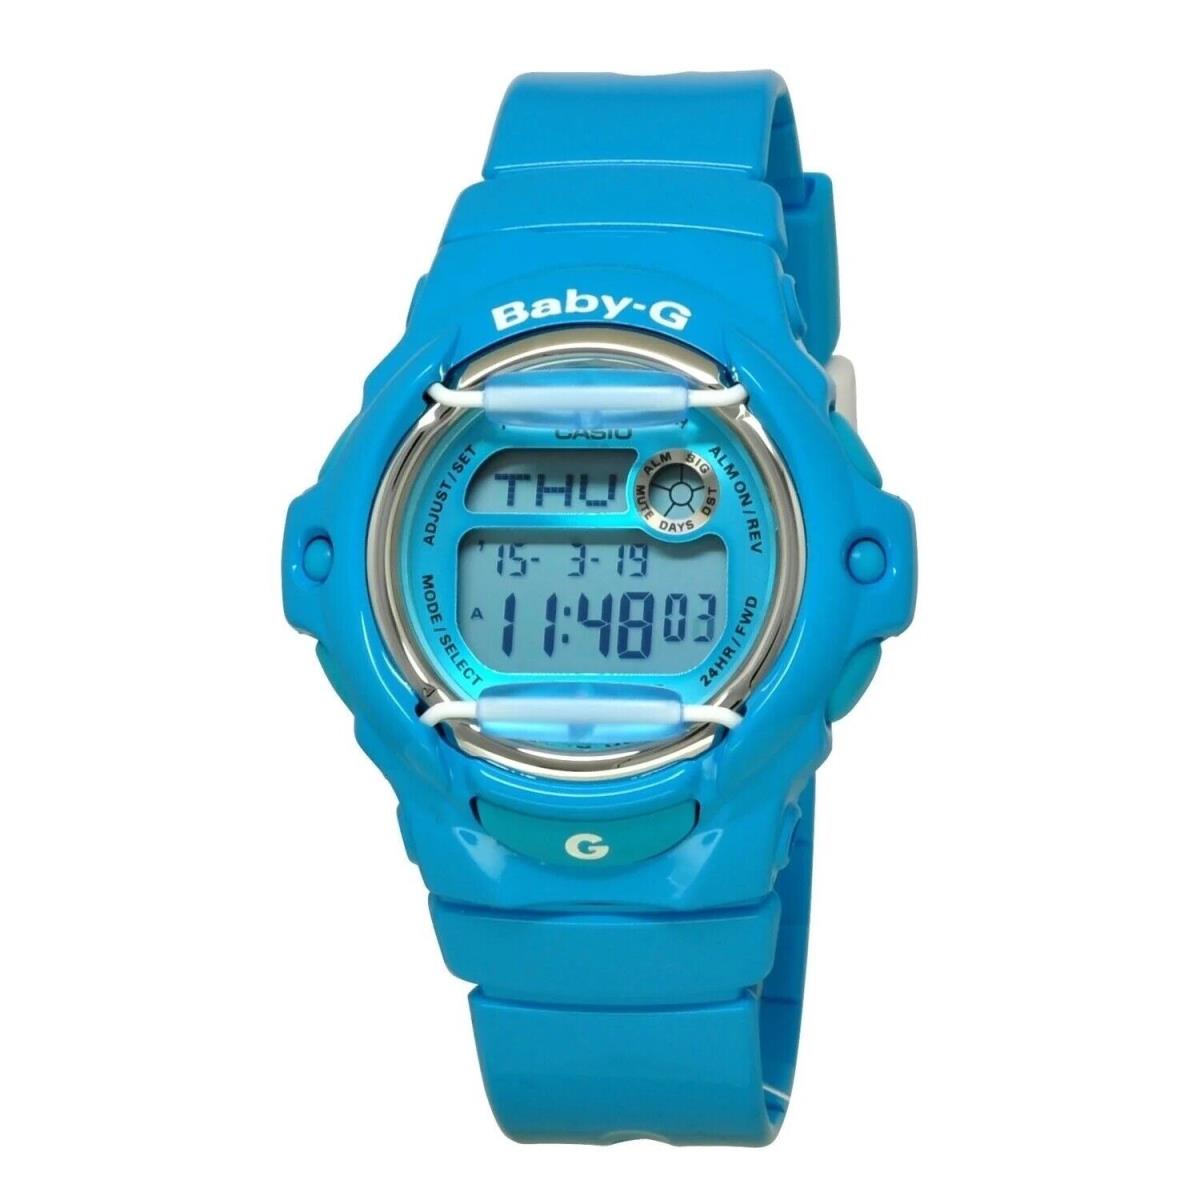 Casio Baby-g Shock BG169R-2B World Time Aqua Blue Digital 100m Ladies Watch